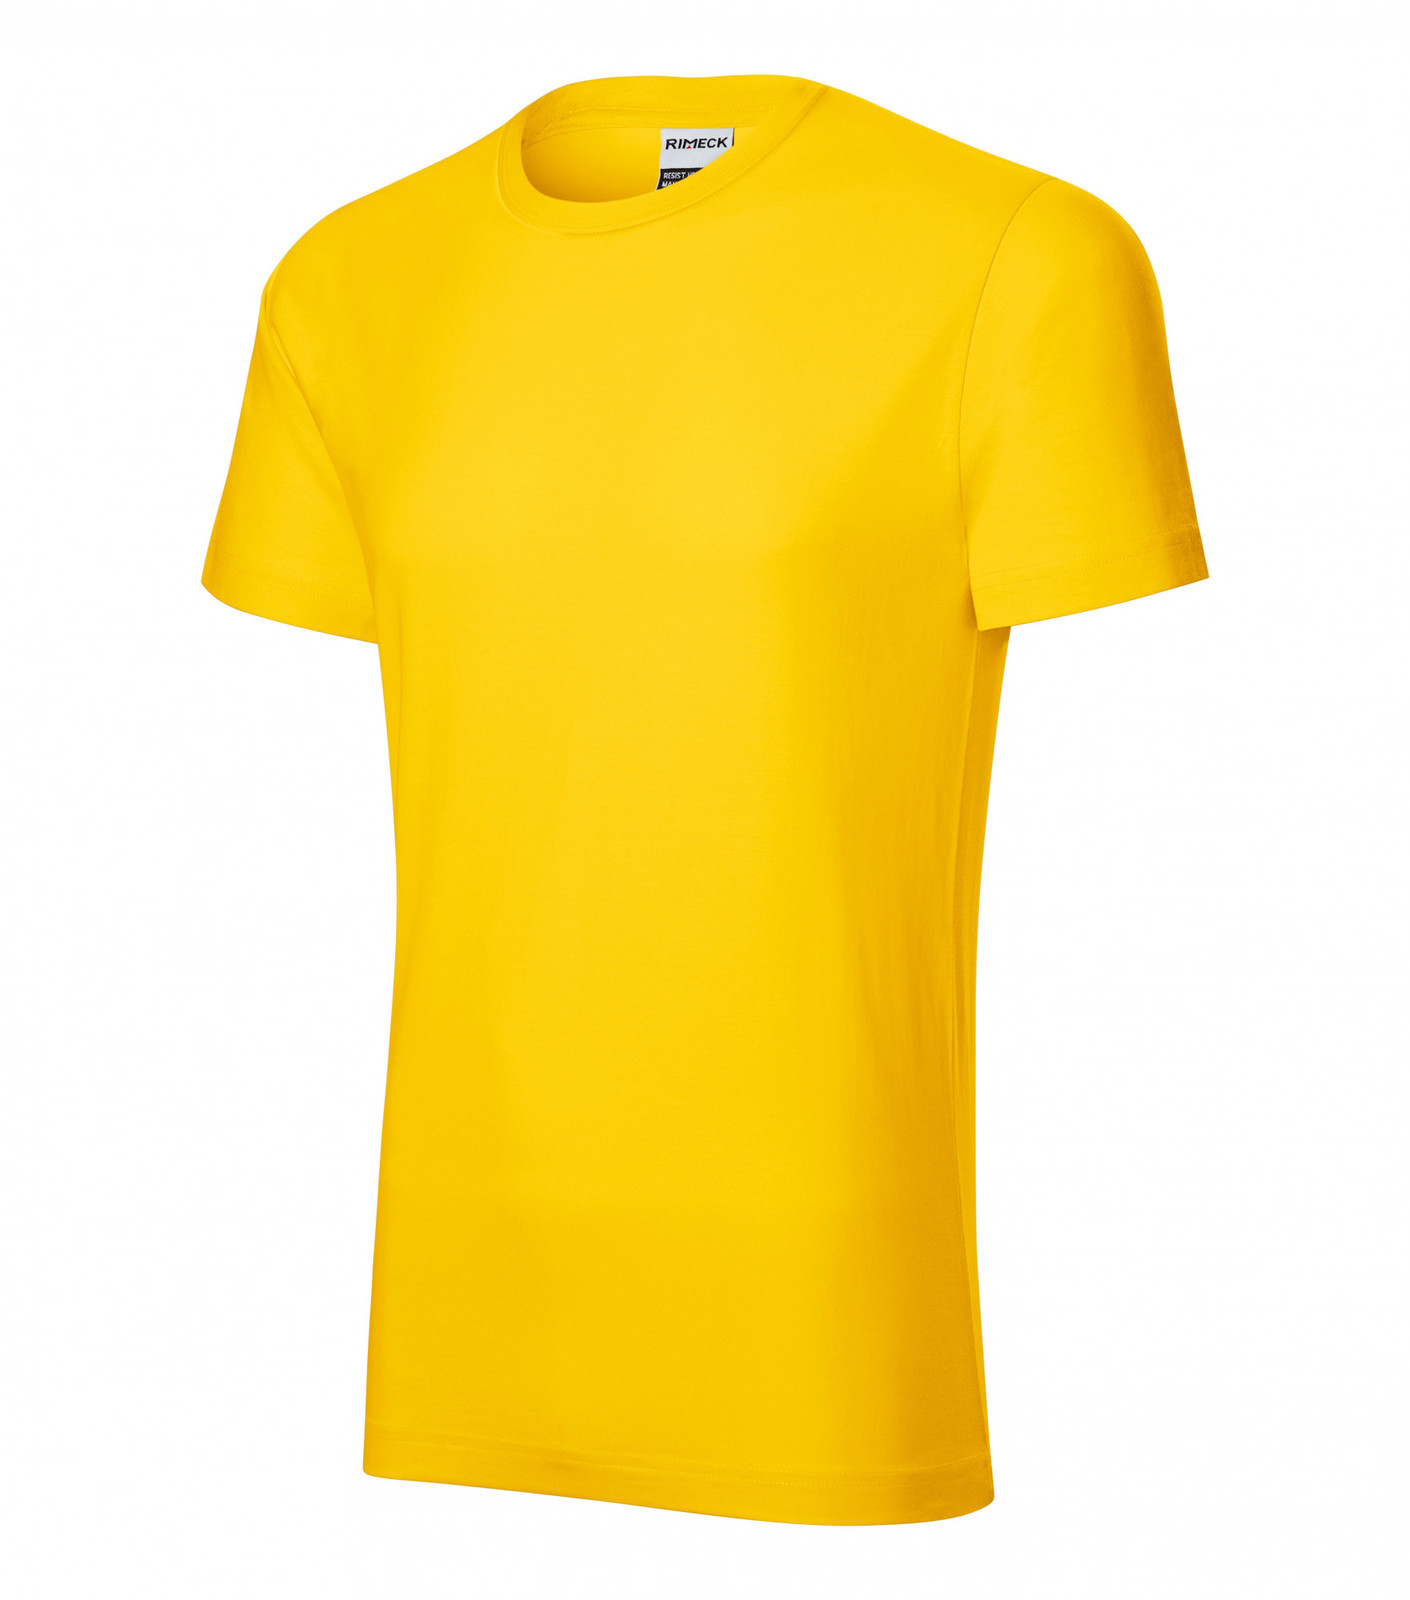 Pánske tričko Malfini Resist Heavy R03 - veľkosť: L, farba: žltá